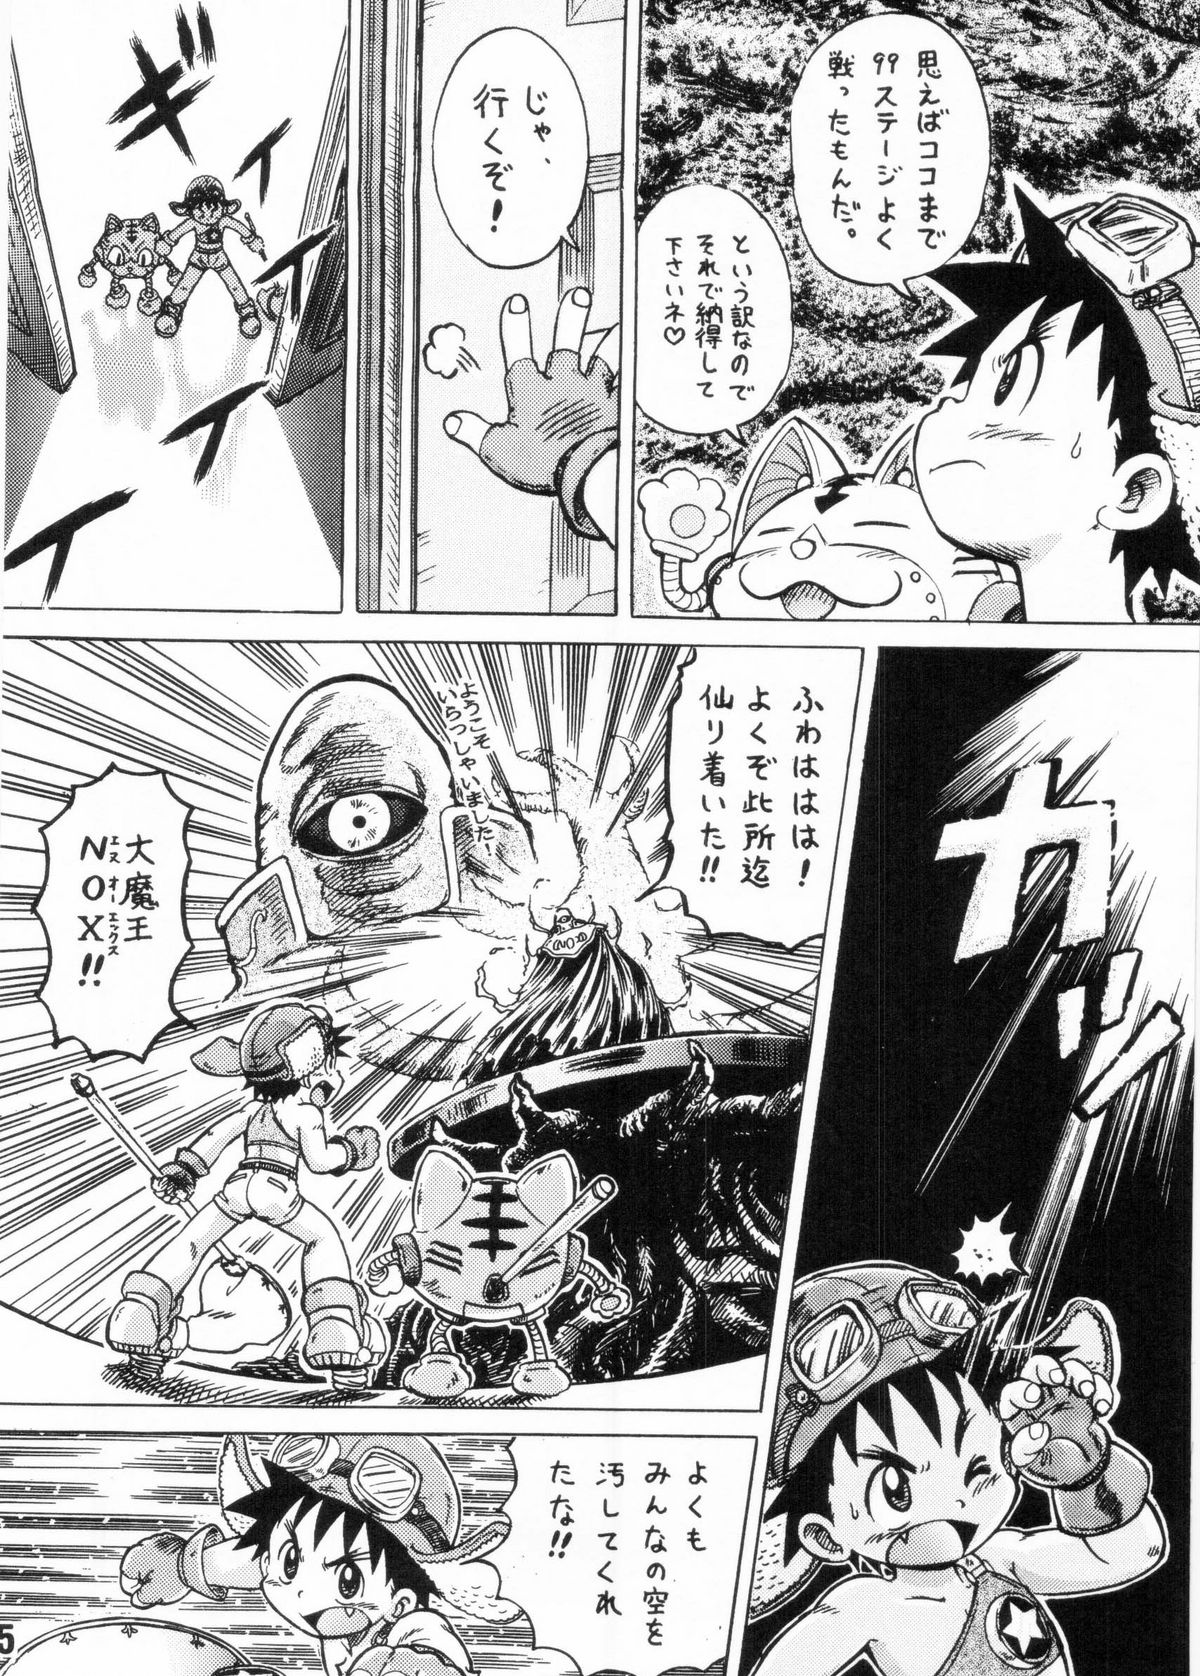 [Shota][Anthology] Nekketsu Project - Shounen Muscat Shake Vol.6 page 24 full